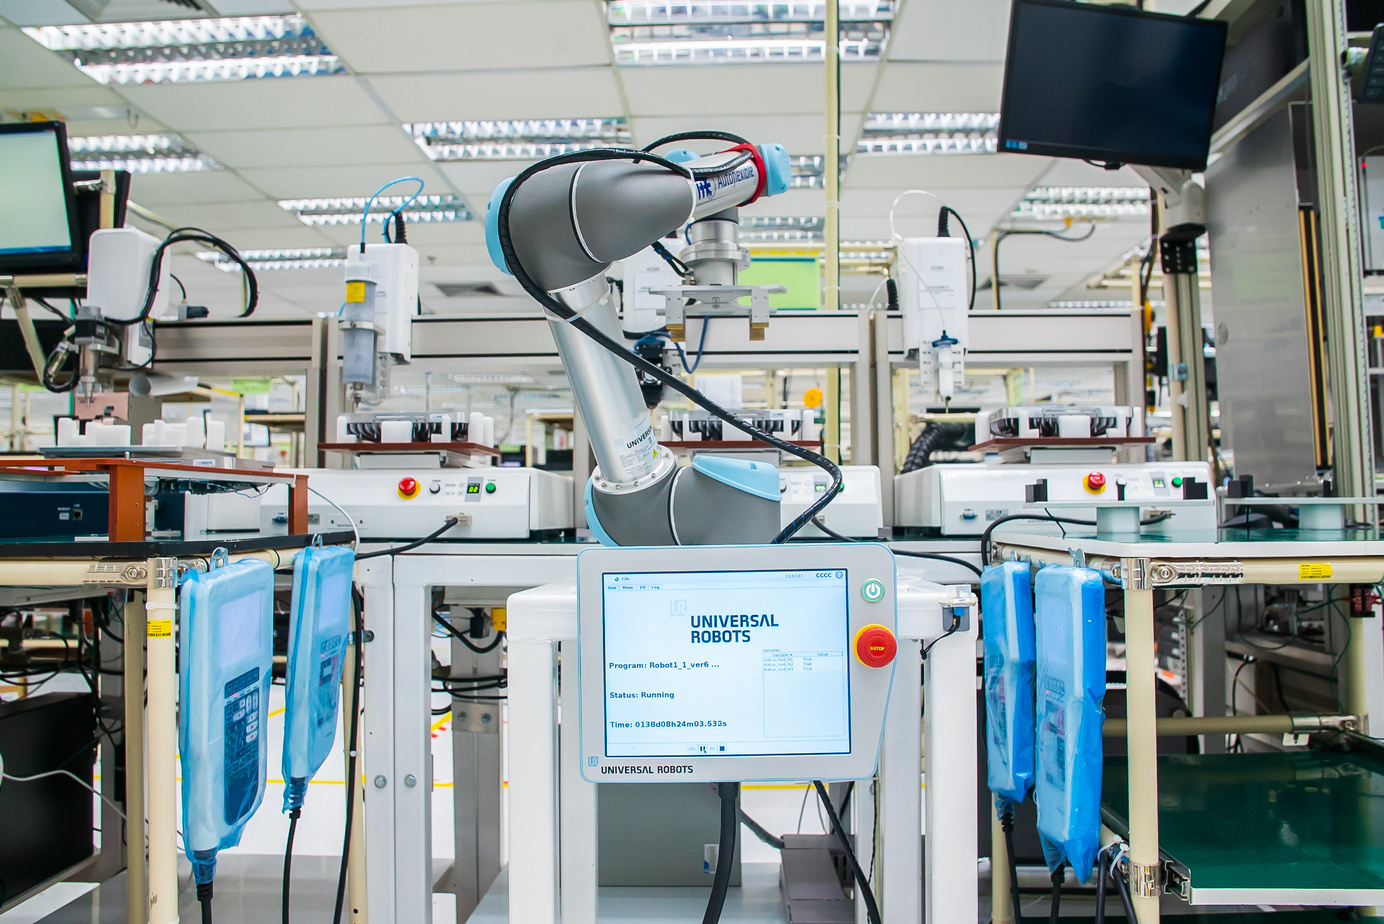 ยูนิเวอร์ซัล โรบอท ผู้สร้างนวตกรรมหุ่นยนต์โคบอทชั้นนำของโลก เพิ่มประสิทธิภาพให้เบนซ์มาร์ค อิเลคทรอนิคส์ ในประเทศไทยถึง 25 เปอร์เซ็นต์